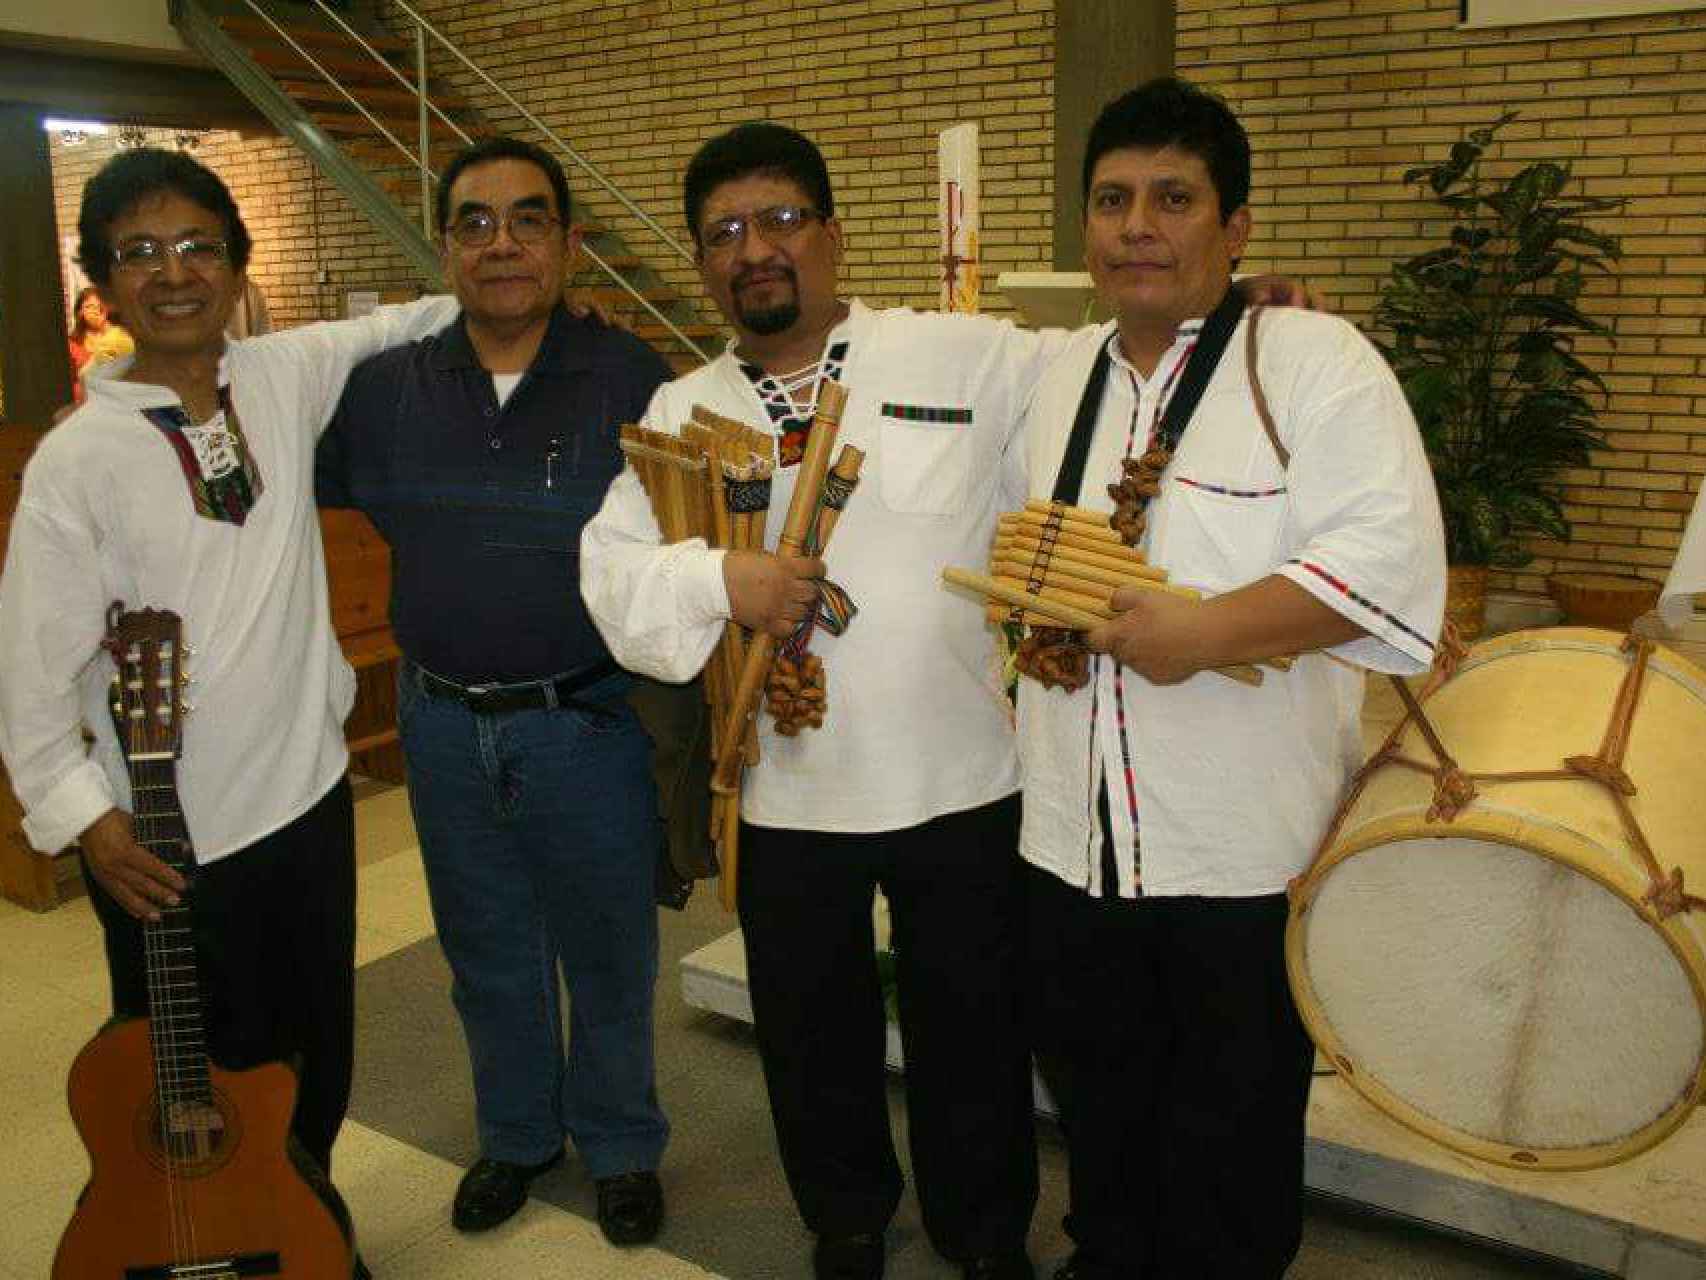 Germán Buenaño, el primero a la izquierda, junto a su grupo de música peruana.